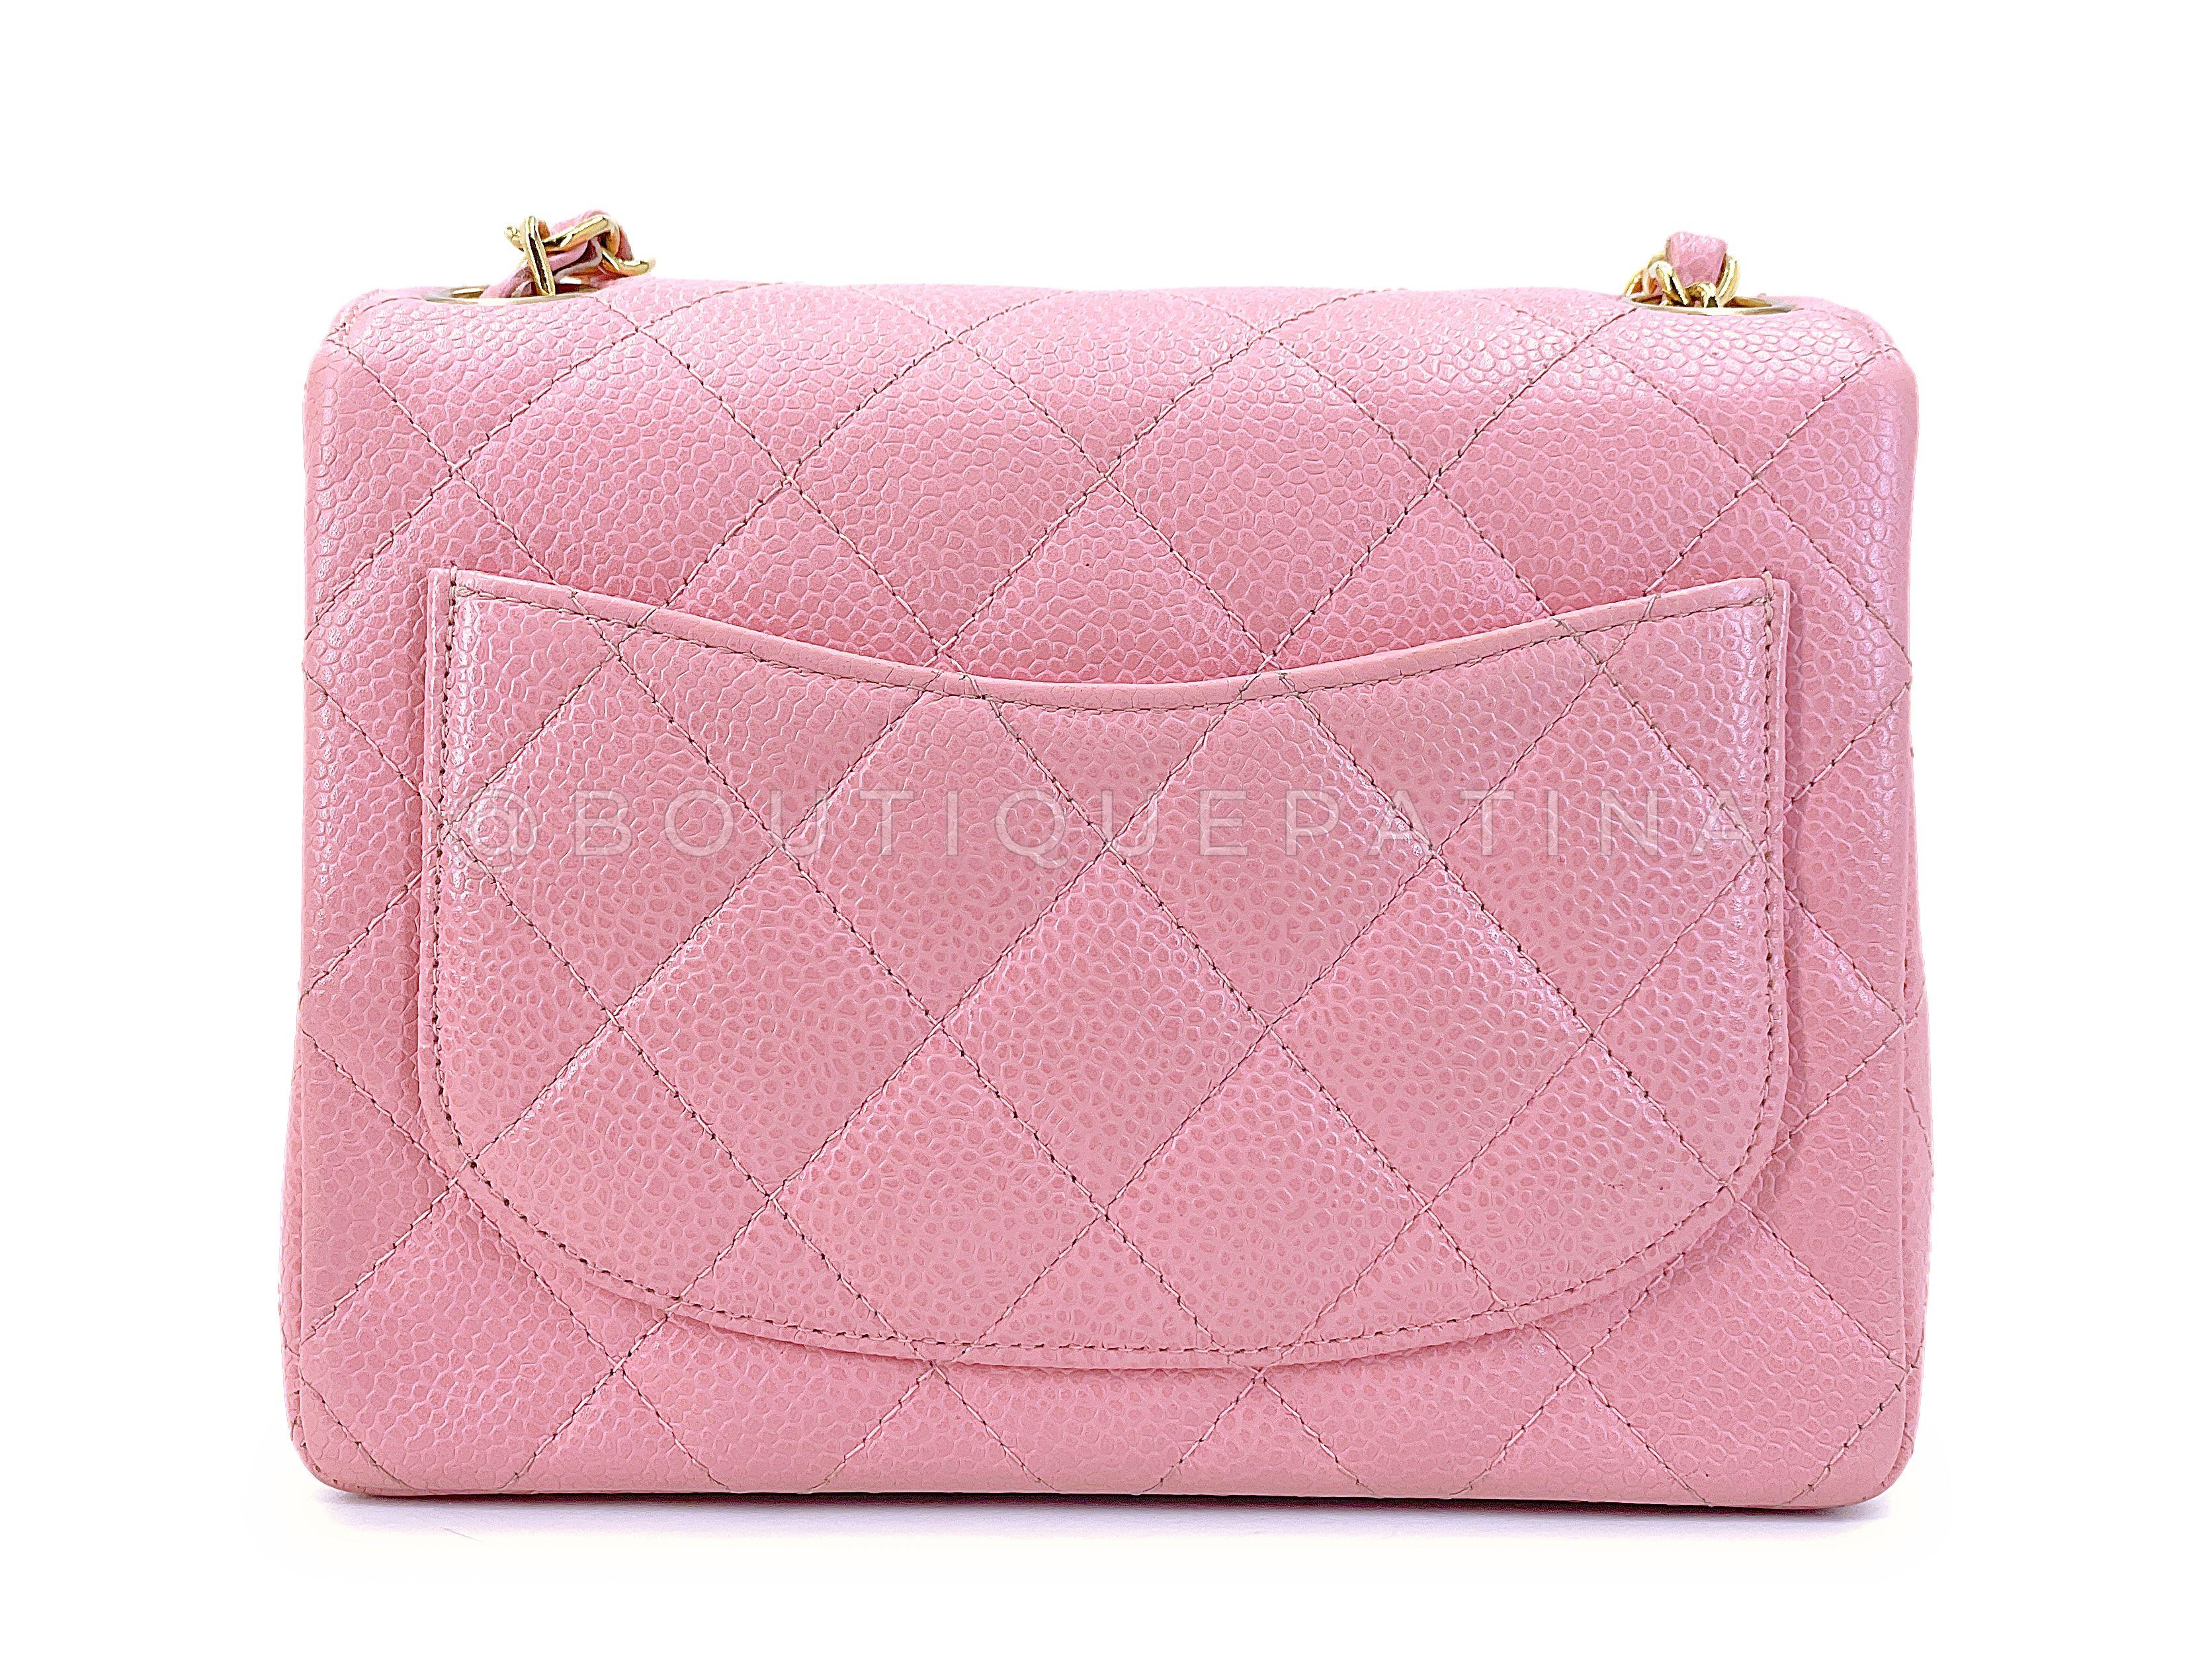 Chanel 2004 Vintage Sakura Pink Square Mini Flap Bag 24k GHW 67727 For Sale 1